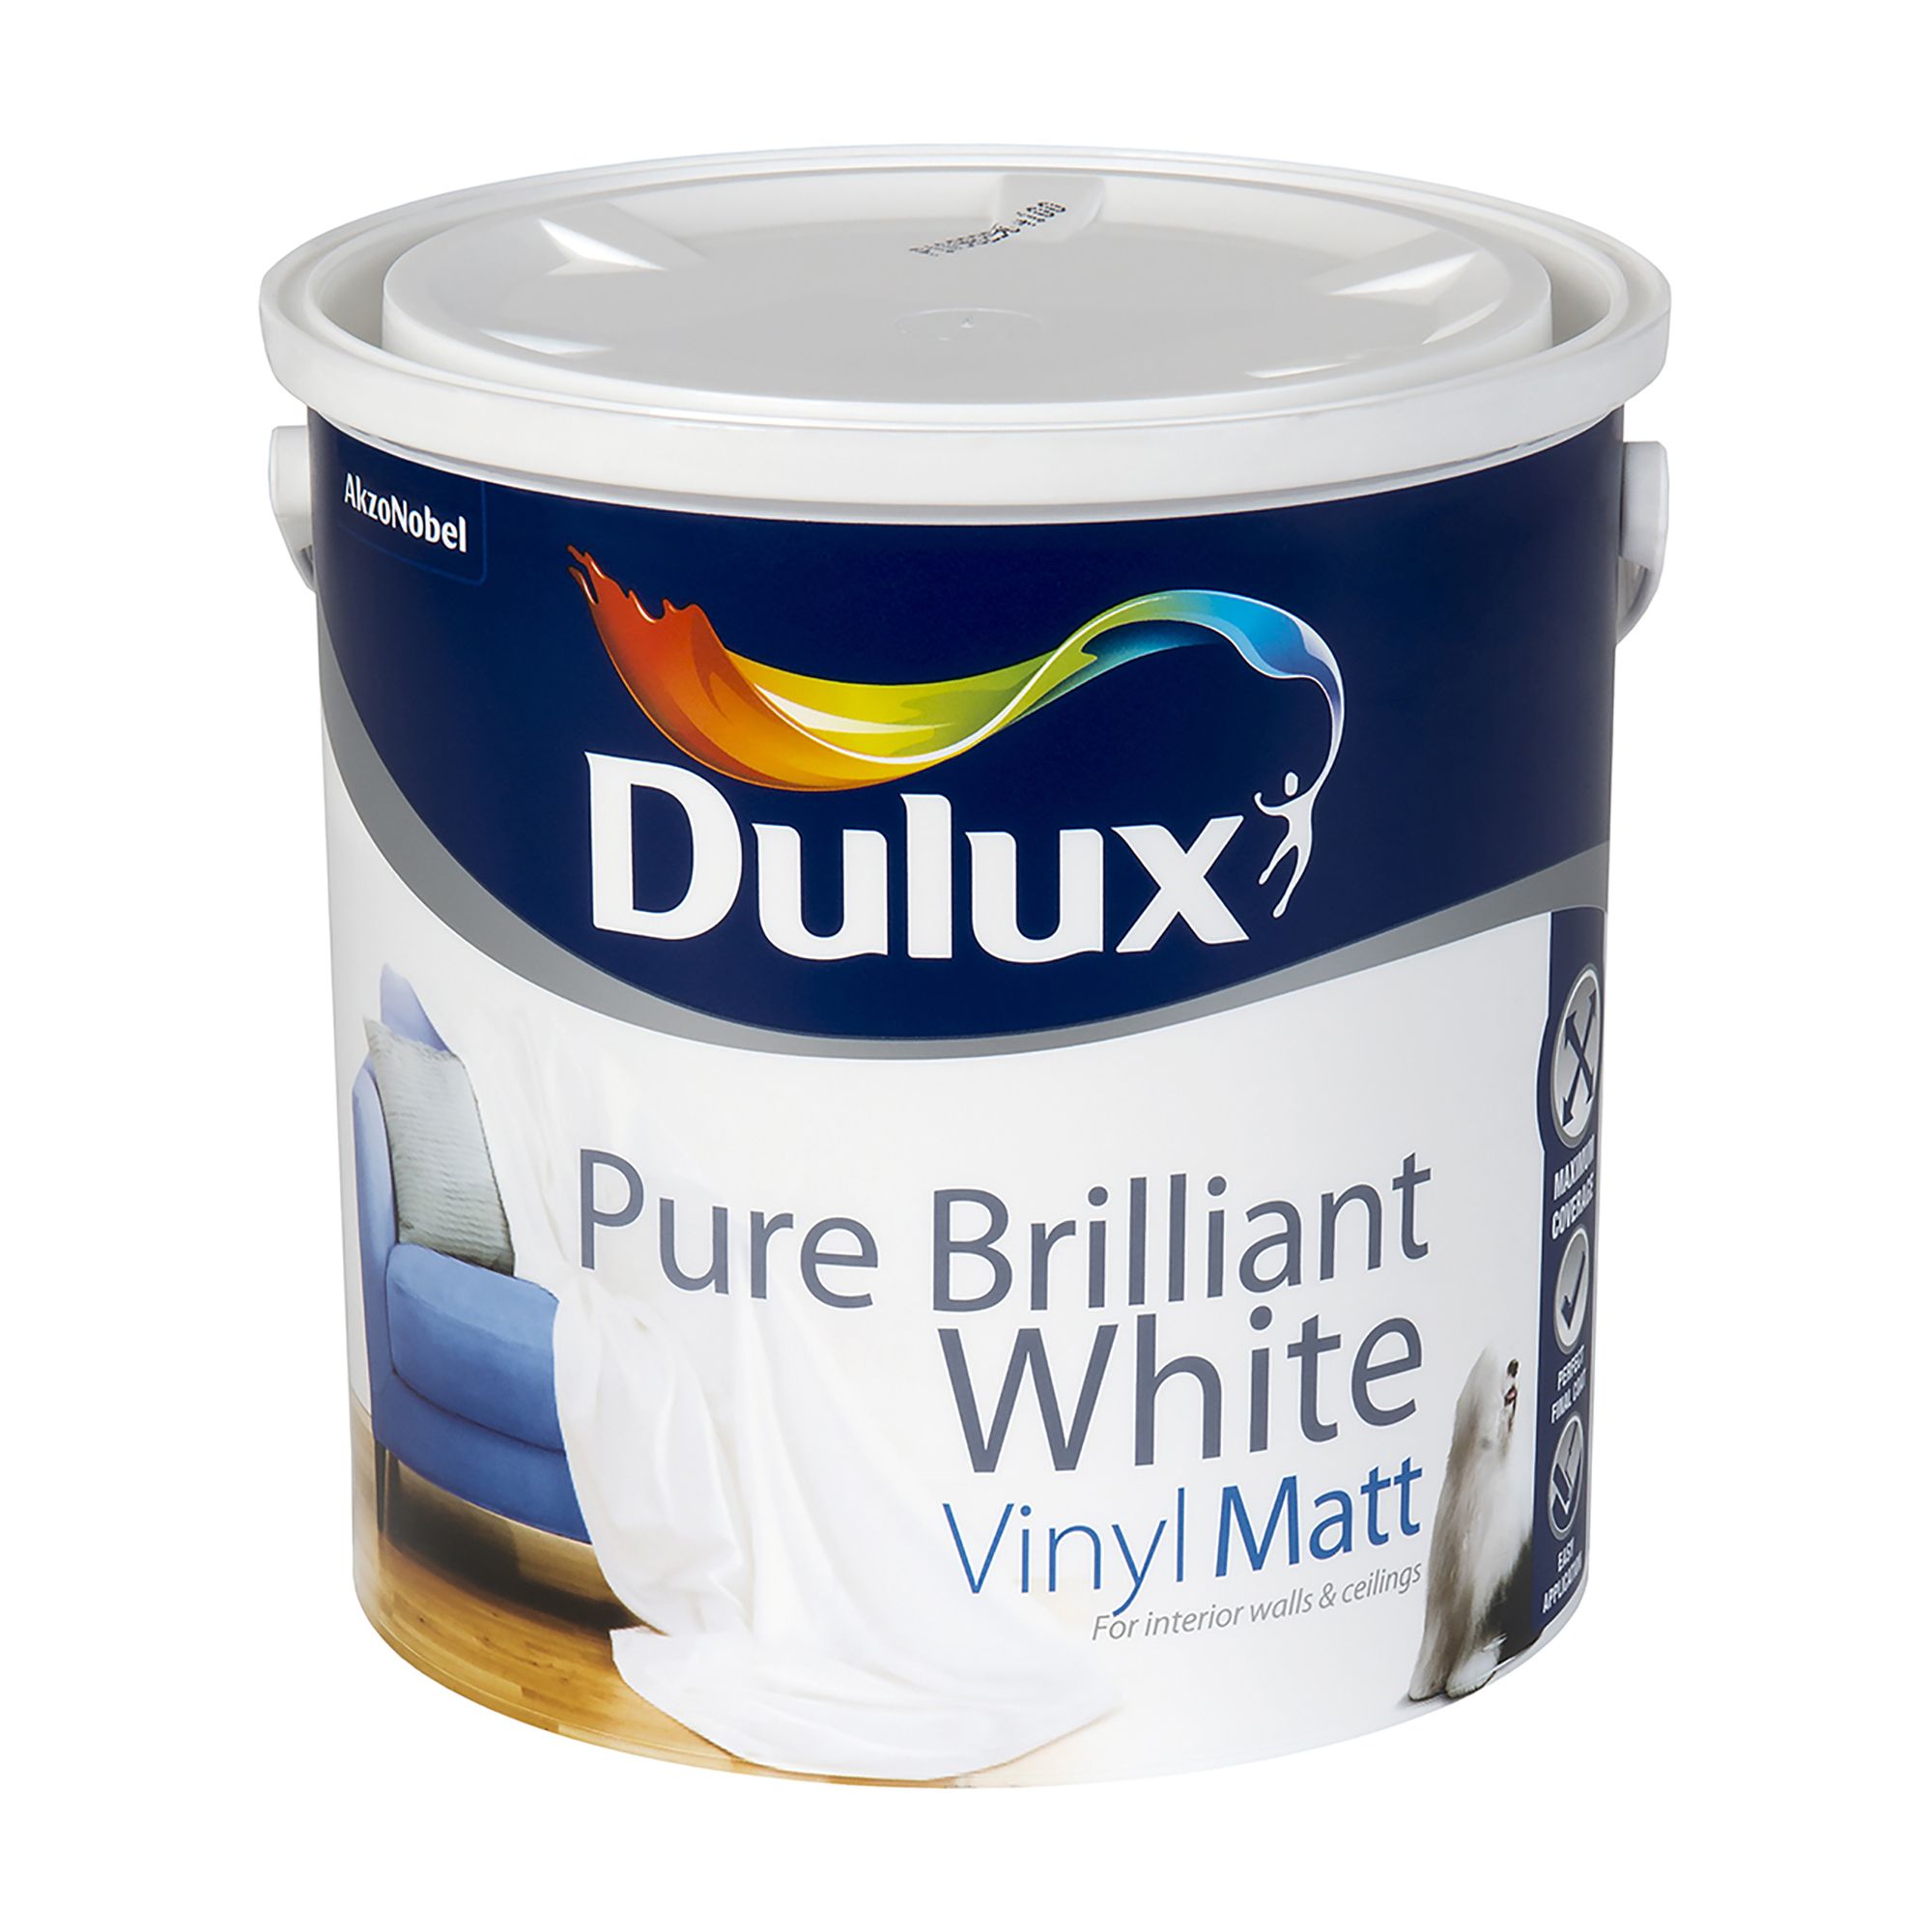 Dulux Easycare White Vinyl matt Emulsion paint, 2.5L